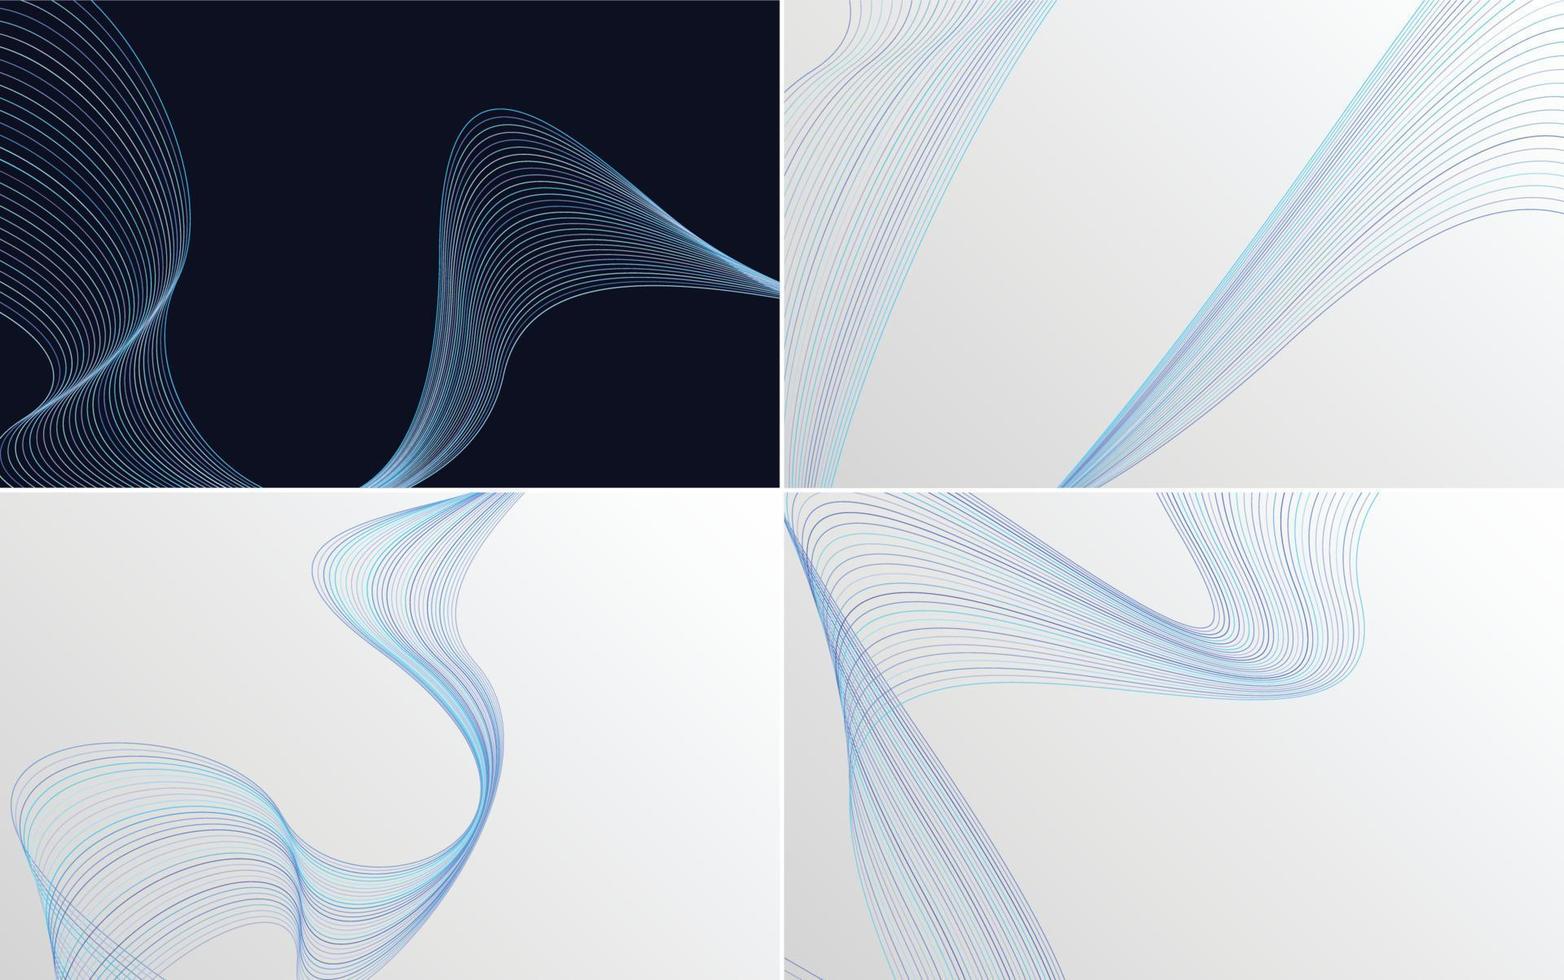 toevoegen een modern tintje naar uw presentatie met deze Golf kromme abstract vector achtergrond pak